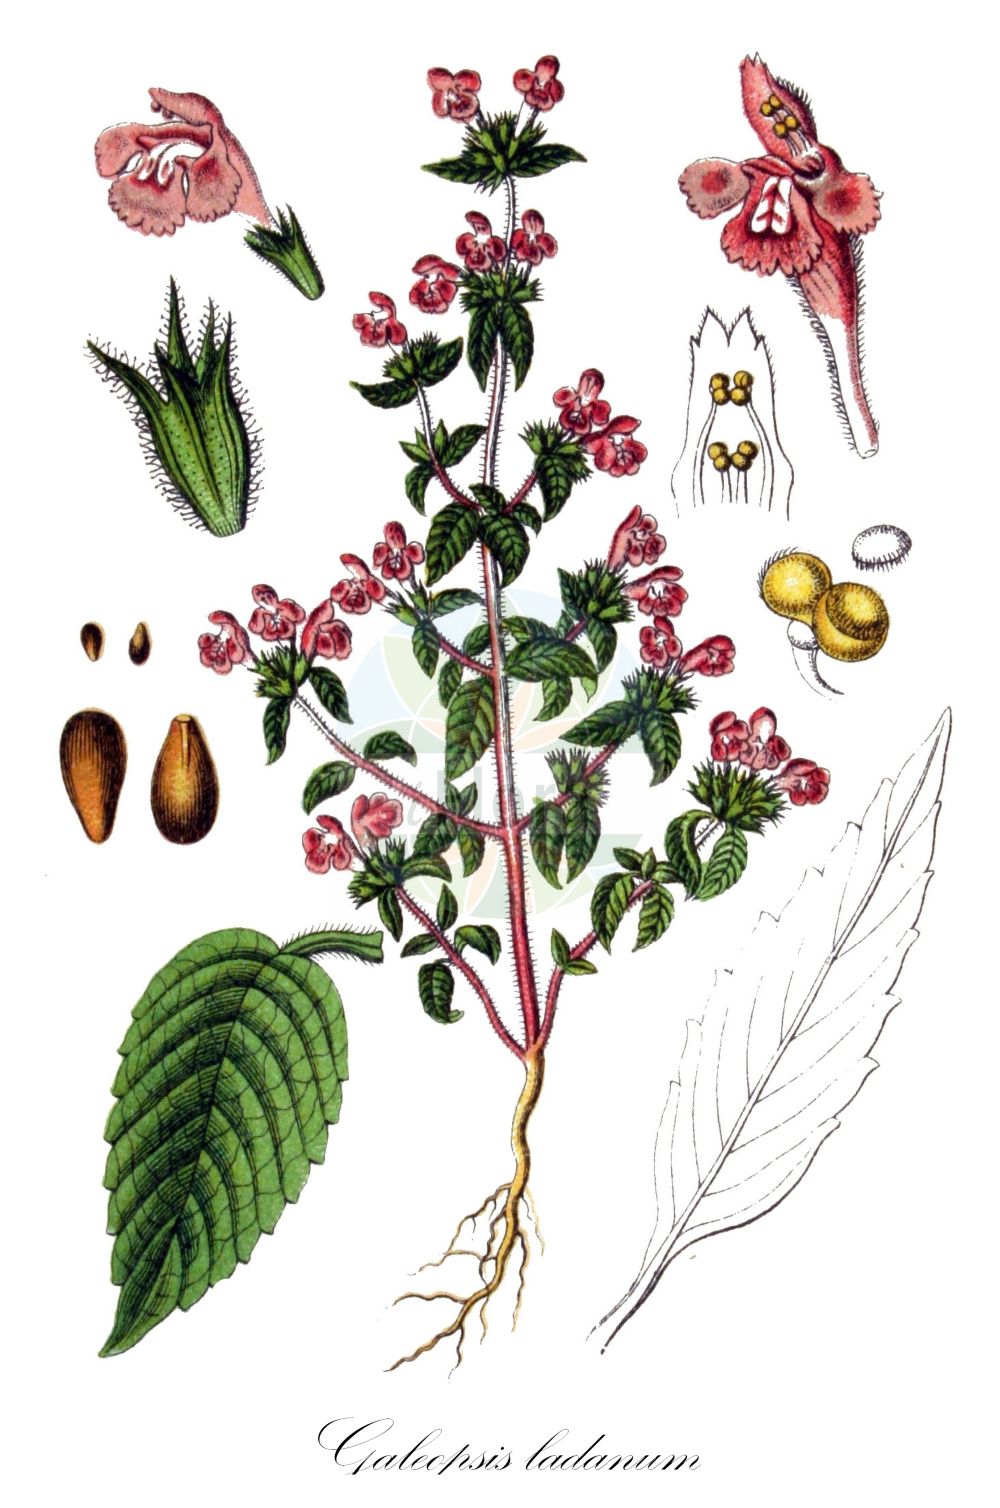 Historische Abbildung von Galeopsis ladanum (Acker-Hohlzahn - Broad-leaved Hemp-Nettle). Das Bild zeigt Blatt, Bluete, Frucht und Same. ---- Historical Drawing of Galeopsis ladanum (Acker-Hohlzahn - Broad-leaved Hemp-Nettle). The image is showing leaf, flower, fruit and seed.(Galeopsis ladanum,Acker-Hohlzahn,Broad-leaved Hemp-Nettle,Dalanum ladanum,Galeopsis agrigena,Galeopsis arvensis,Galeopsis balatonensis,Galeopsis filholiana,Galeopsis flanatica,Galeopsis glandulosa,Galeopsis intermedia,Galeopsis ladanum,Galeopsis latifolia,Galeopsis litoralis,Galeopsis longiflora,Galeopsis marrubiastrum,Galeopsis micrantha,Galeopsis nepetifolia,Galeopsis parviflora,Galeopsis sallentii,Ladanella ladanum,Ladanum intermedium,Ladanum purpureum,Lamium ladanum,Tetrahit ladanum,Tetrahit vulgare,Acker-Hohlzahn,Breitblaettriger Hohlzahn,Broad-leaved Hemp-Nettle,Field Hemp-nettle,Large Pink Hemp-nettle,Red Hemp-nettle,Galeopsis,Hohlzahn,Hempnettle,Lamiaceae,Lippenblütengewächse,Nettle family,Blatt,Bluete,Frucht,Same,leaf,flower,fruit,seed,Sturm (1796f))